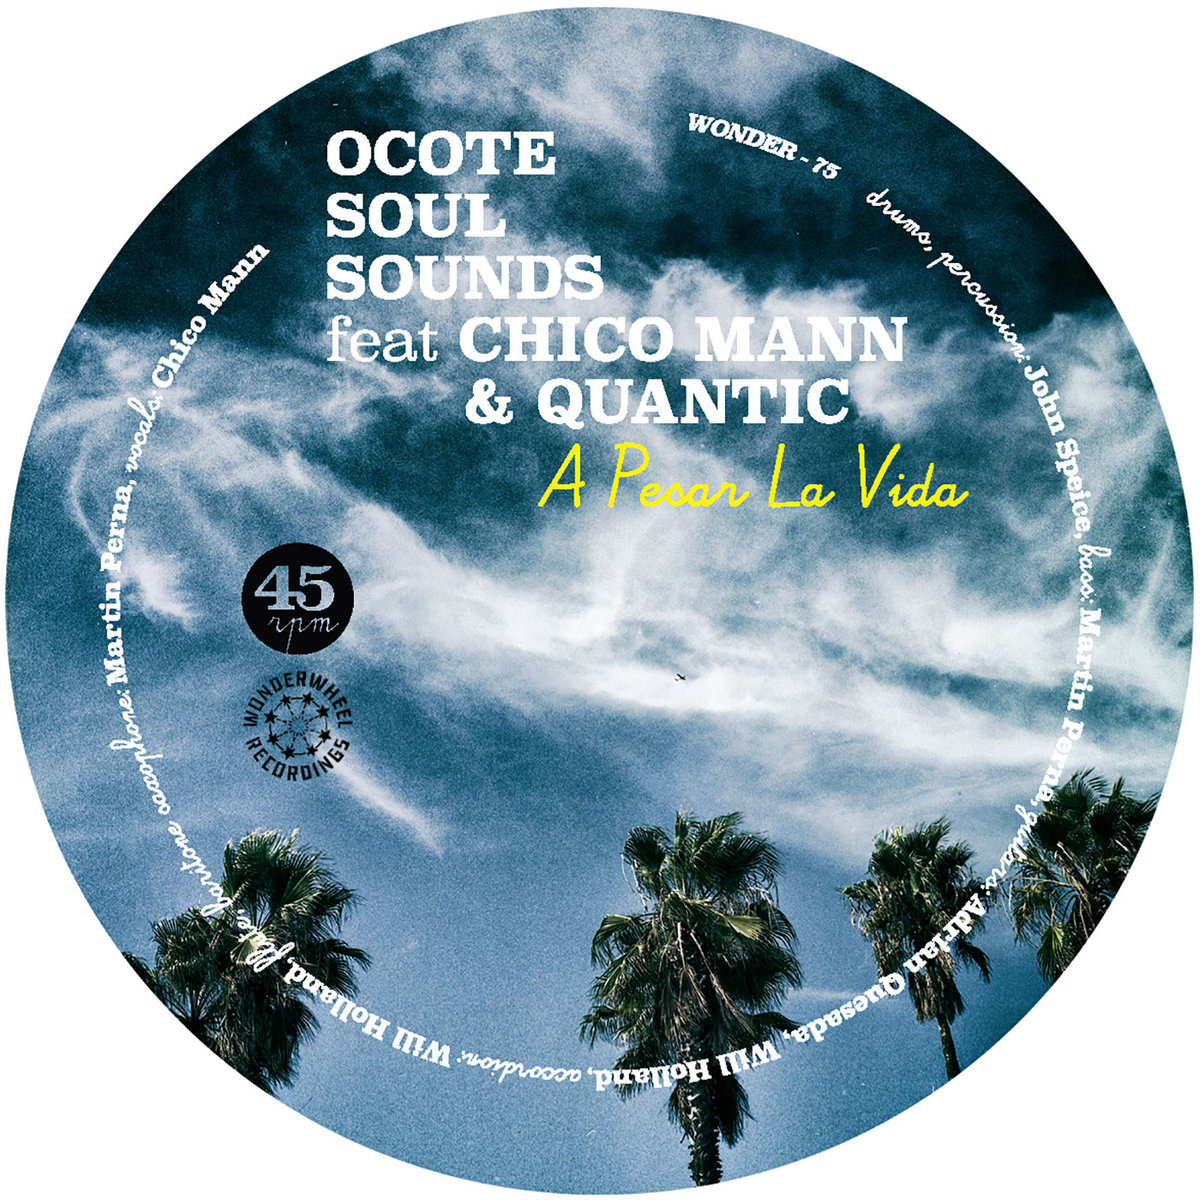 Ocote Soul Sounds Feat. Chico Mann & Quantic